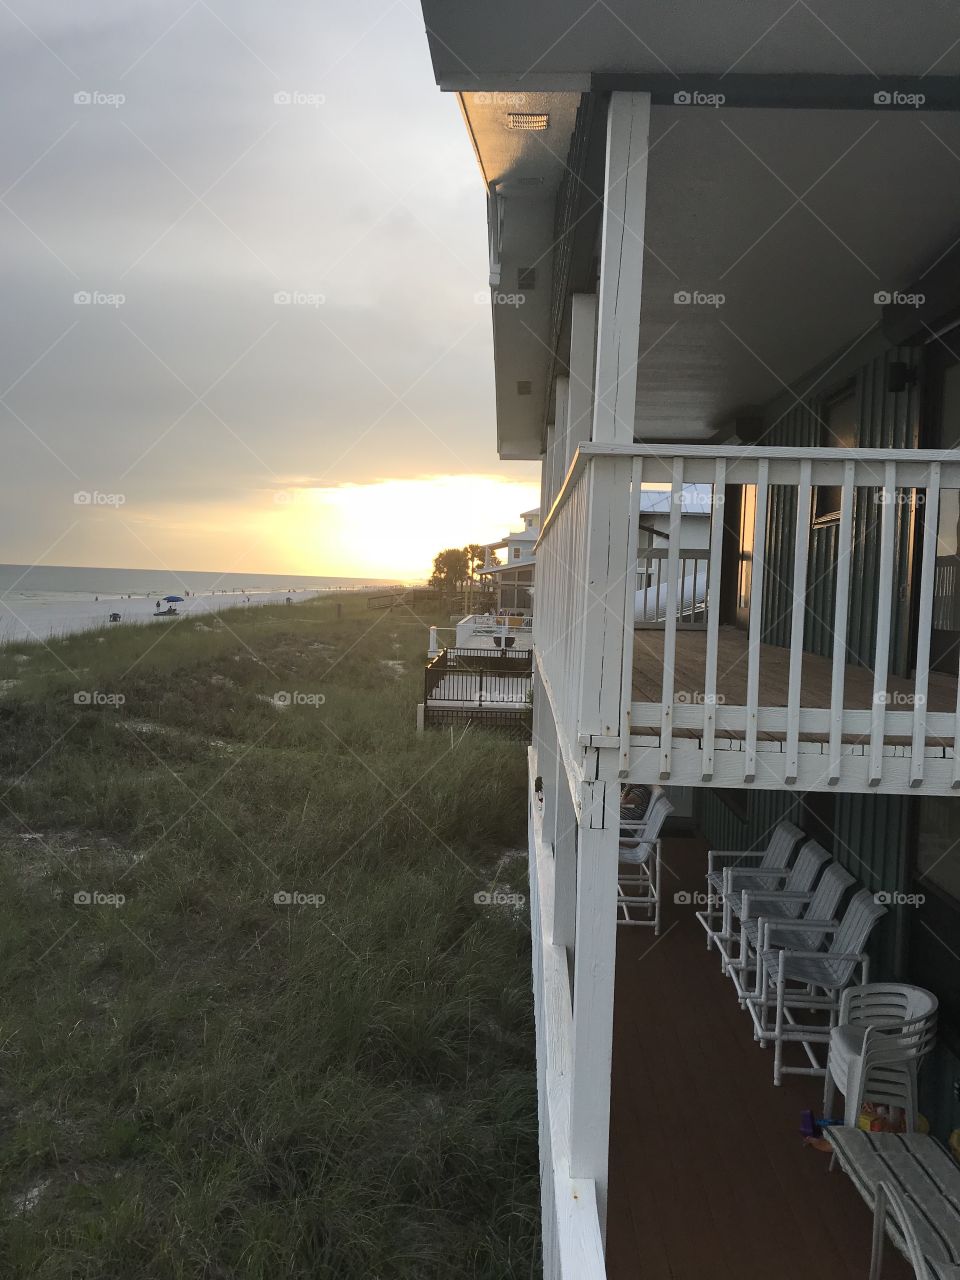 Beach house sunset 